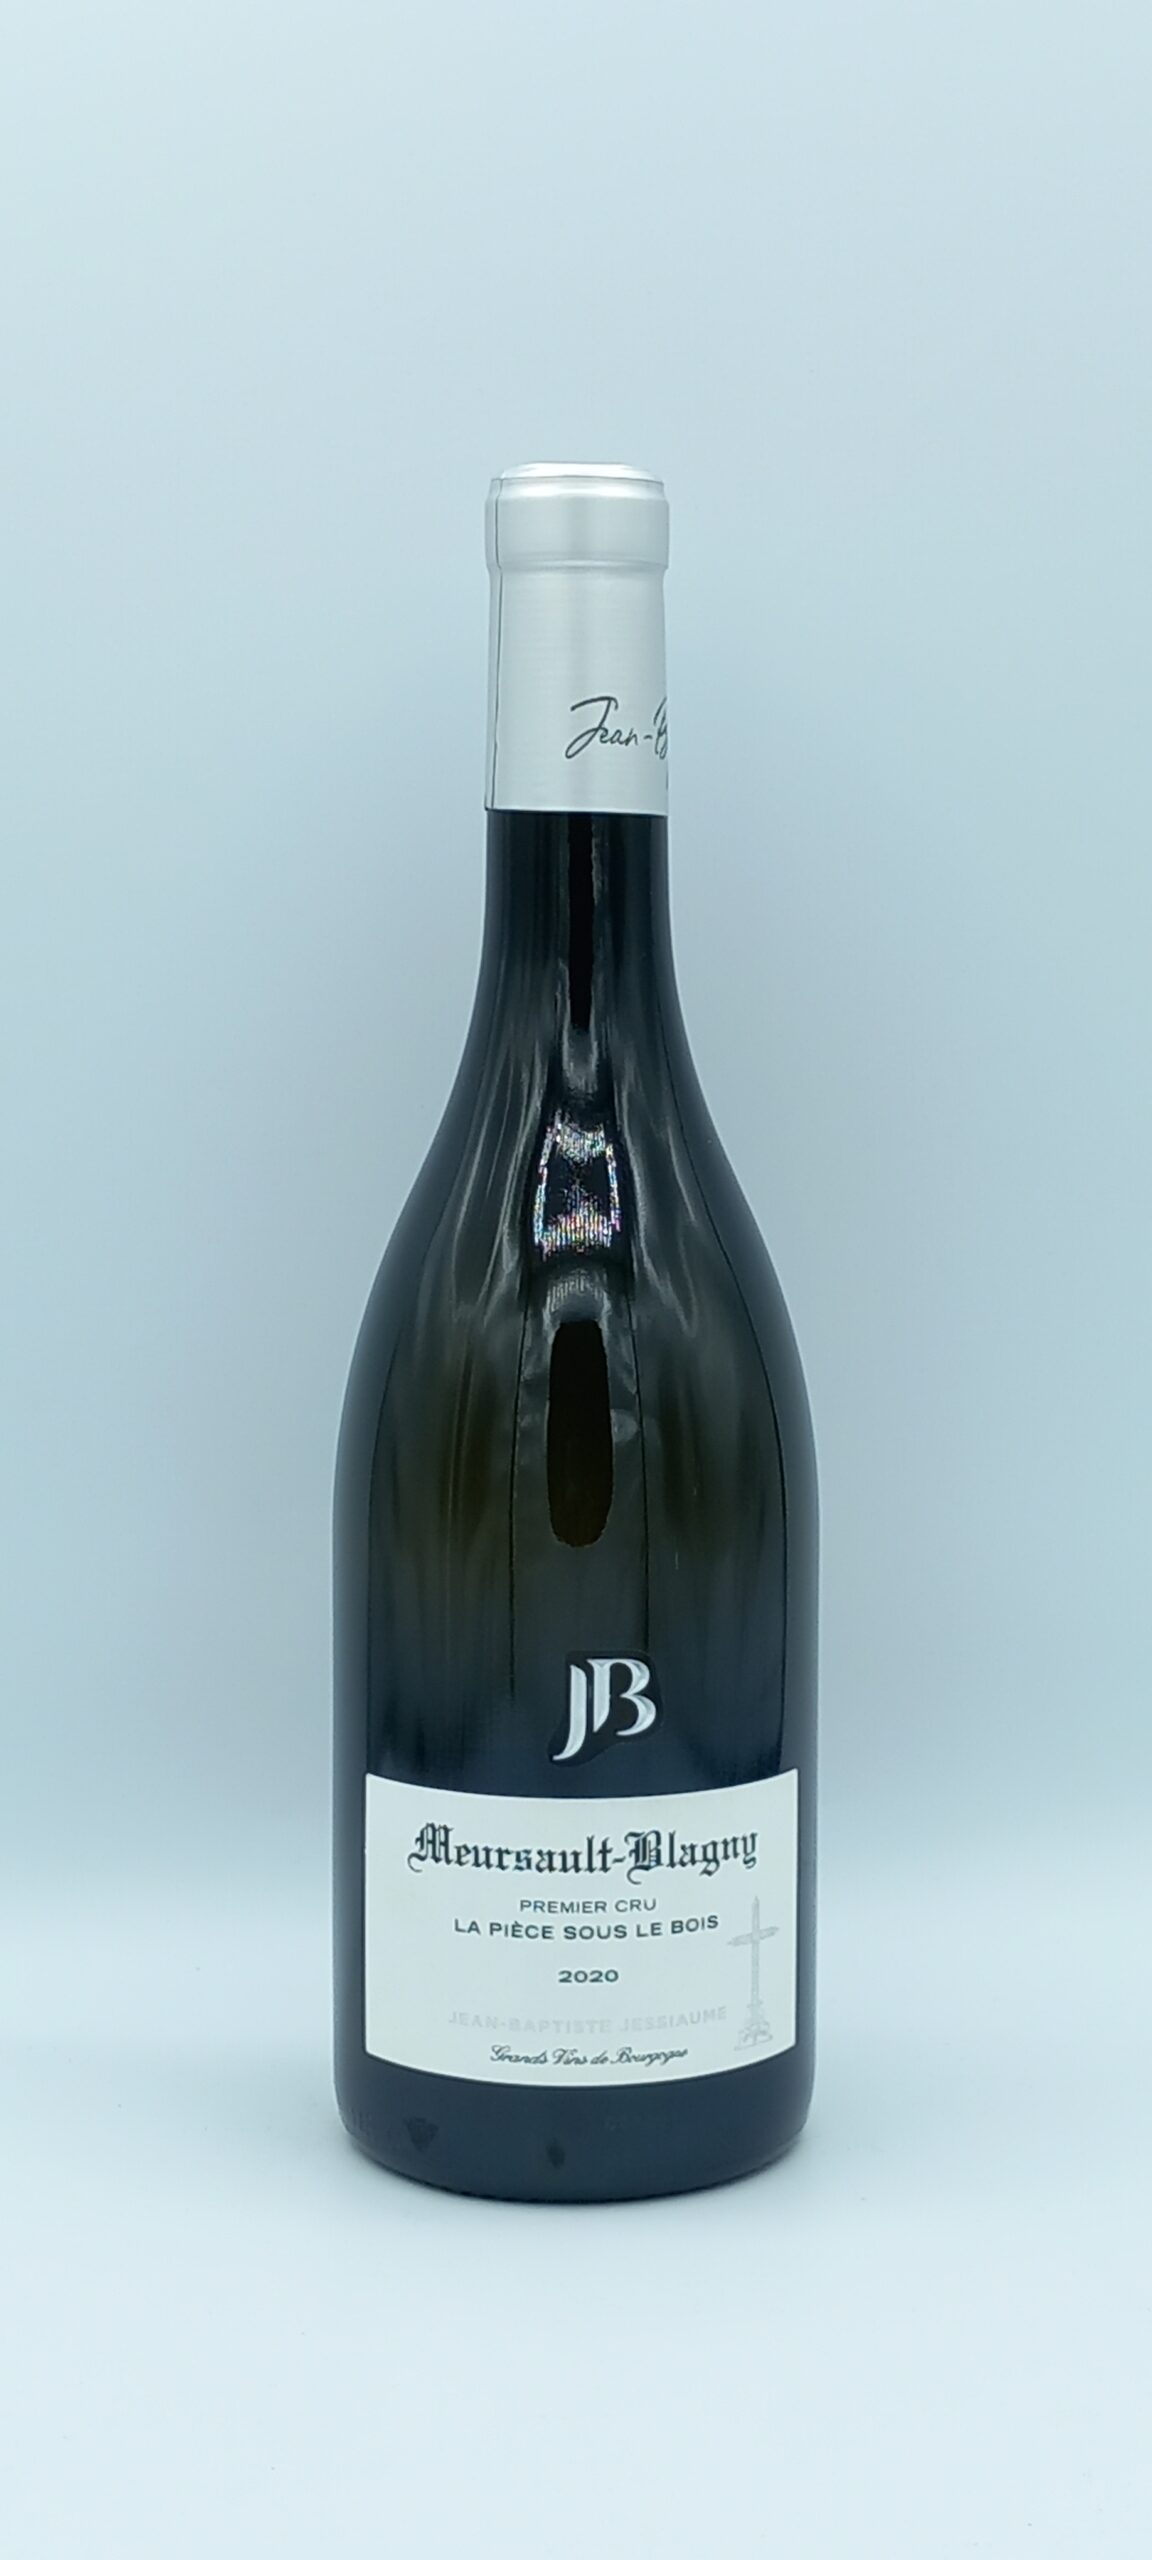 Bourgogne Meursault-Blagny 1er cru “La Pièce sous le Bois” 2020 Domaine JB Jessiaume